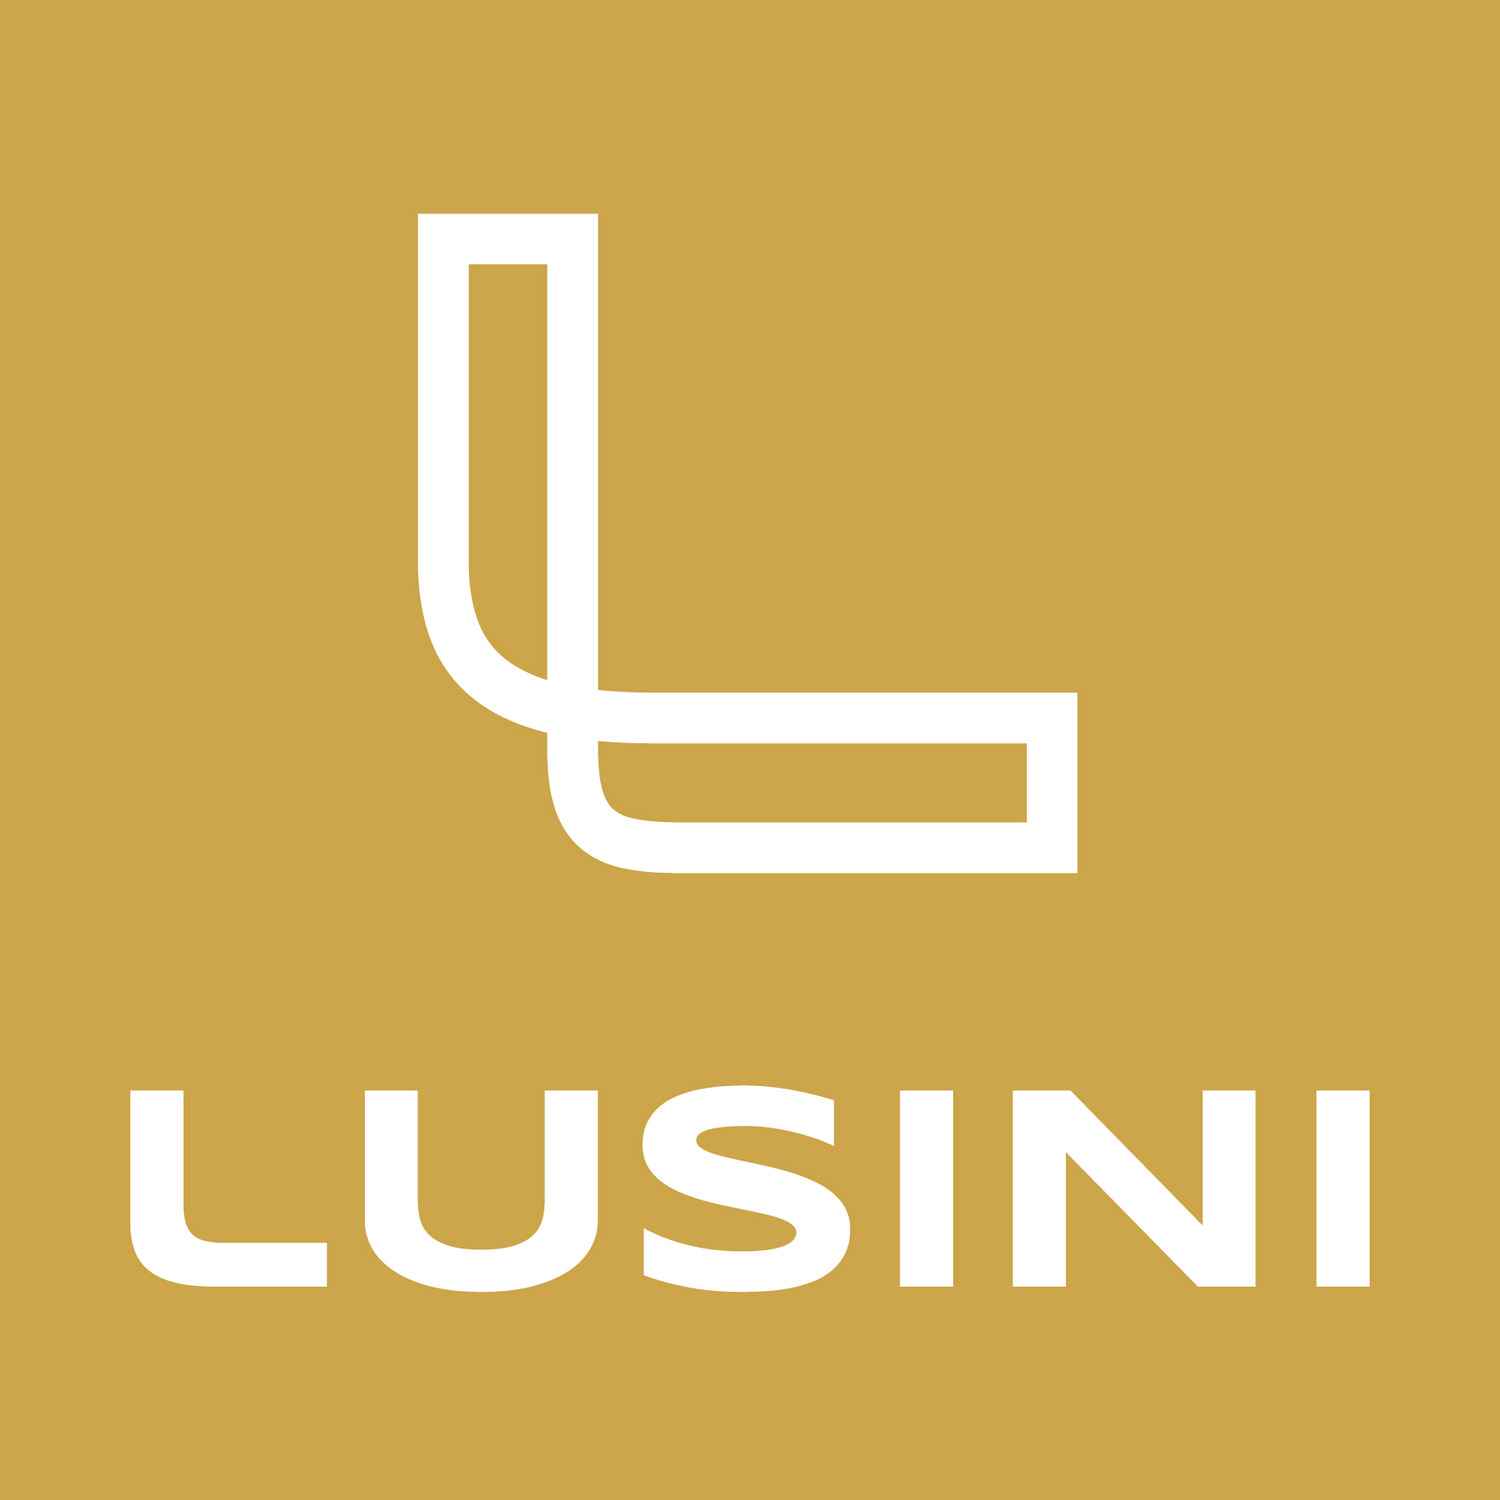 Lusini